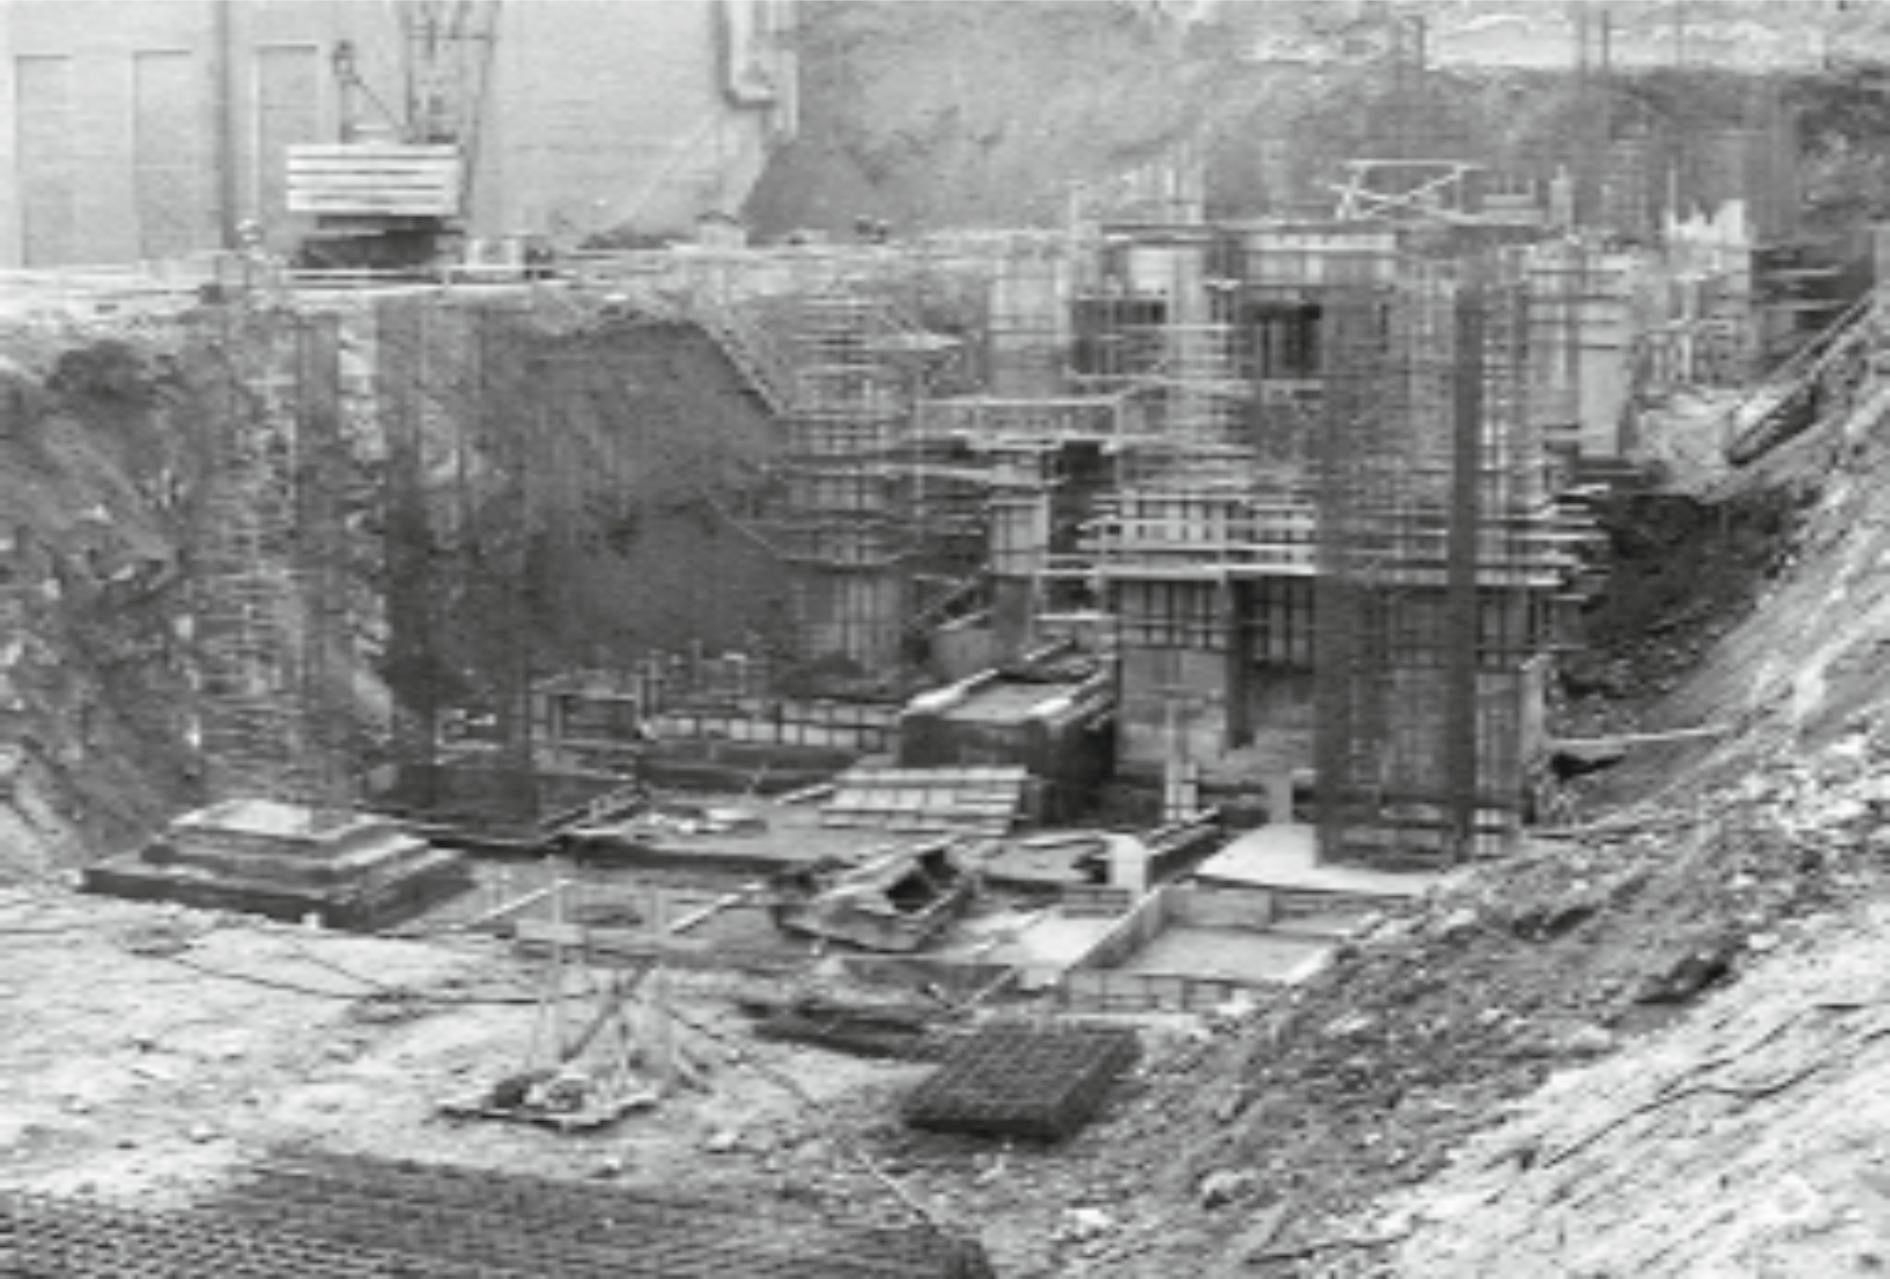 Строительство апатито-бадделеитовой обогатительной фабрики. 1973 г. Construction of the apatite-baddeleyite processing plant, 1973.